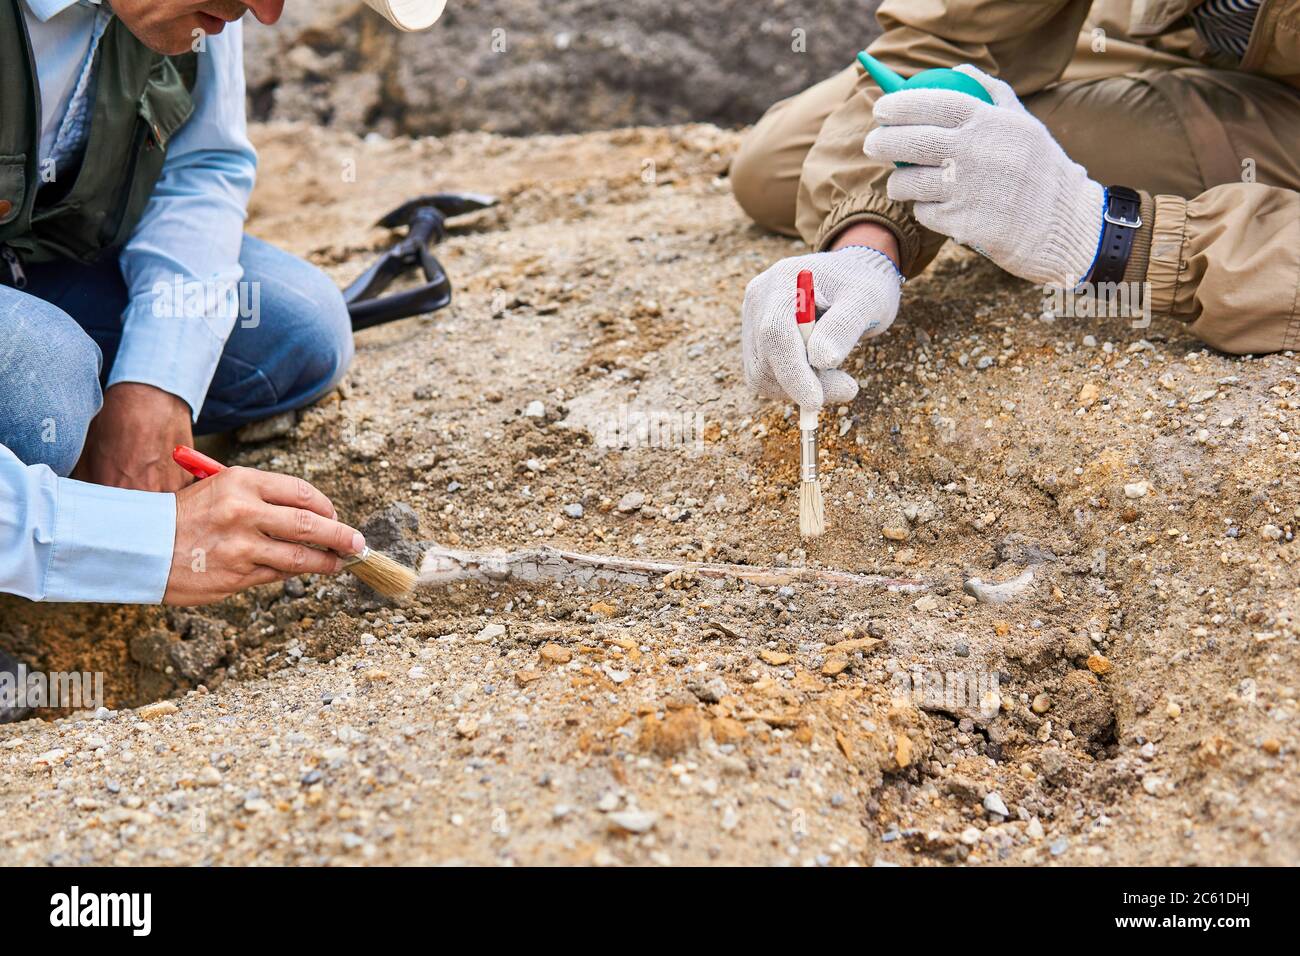 mains de paléontologues nettoyant l'os fossile trouvé dans le désert Banque D'Images